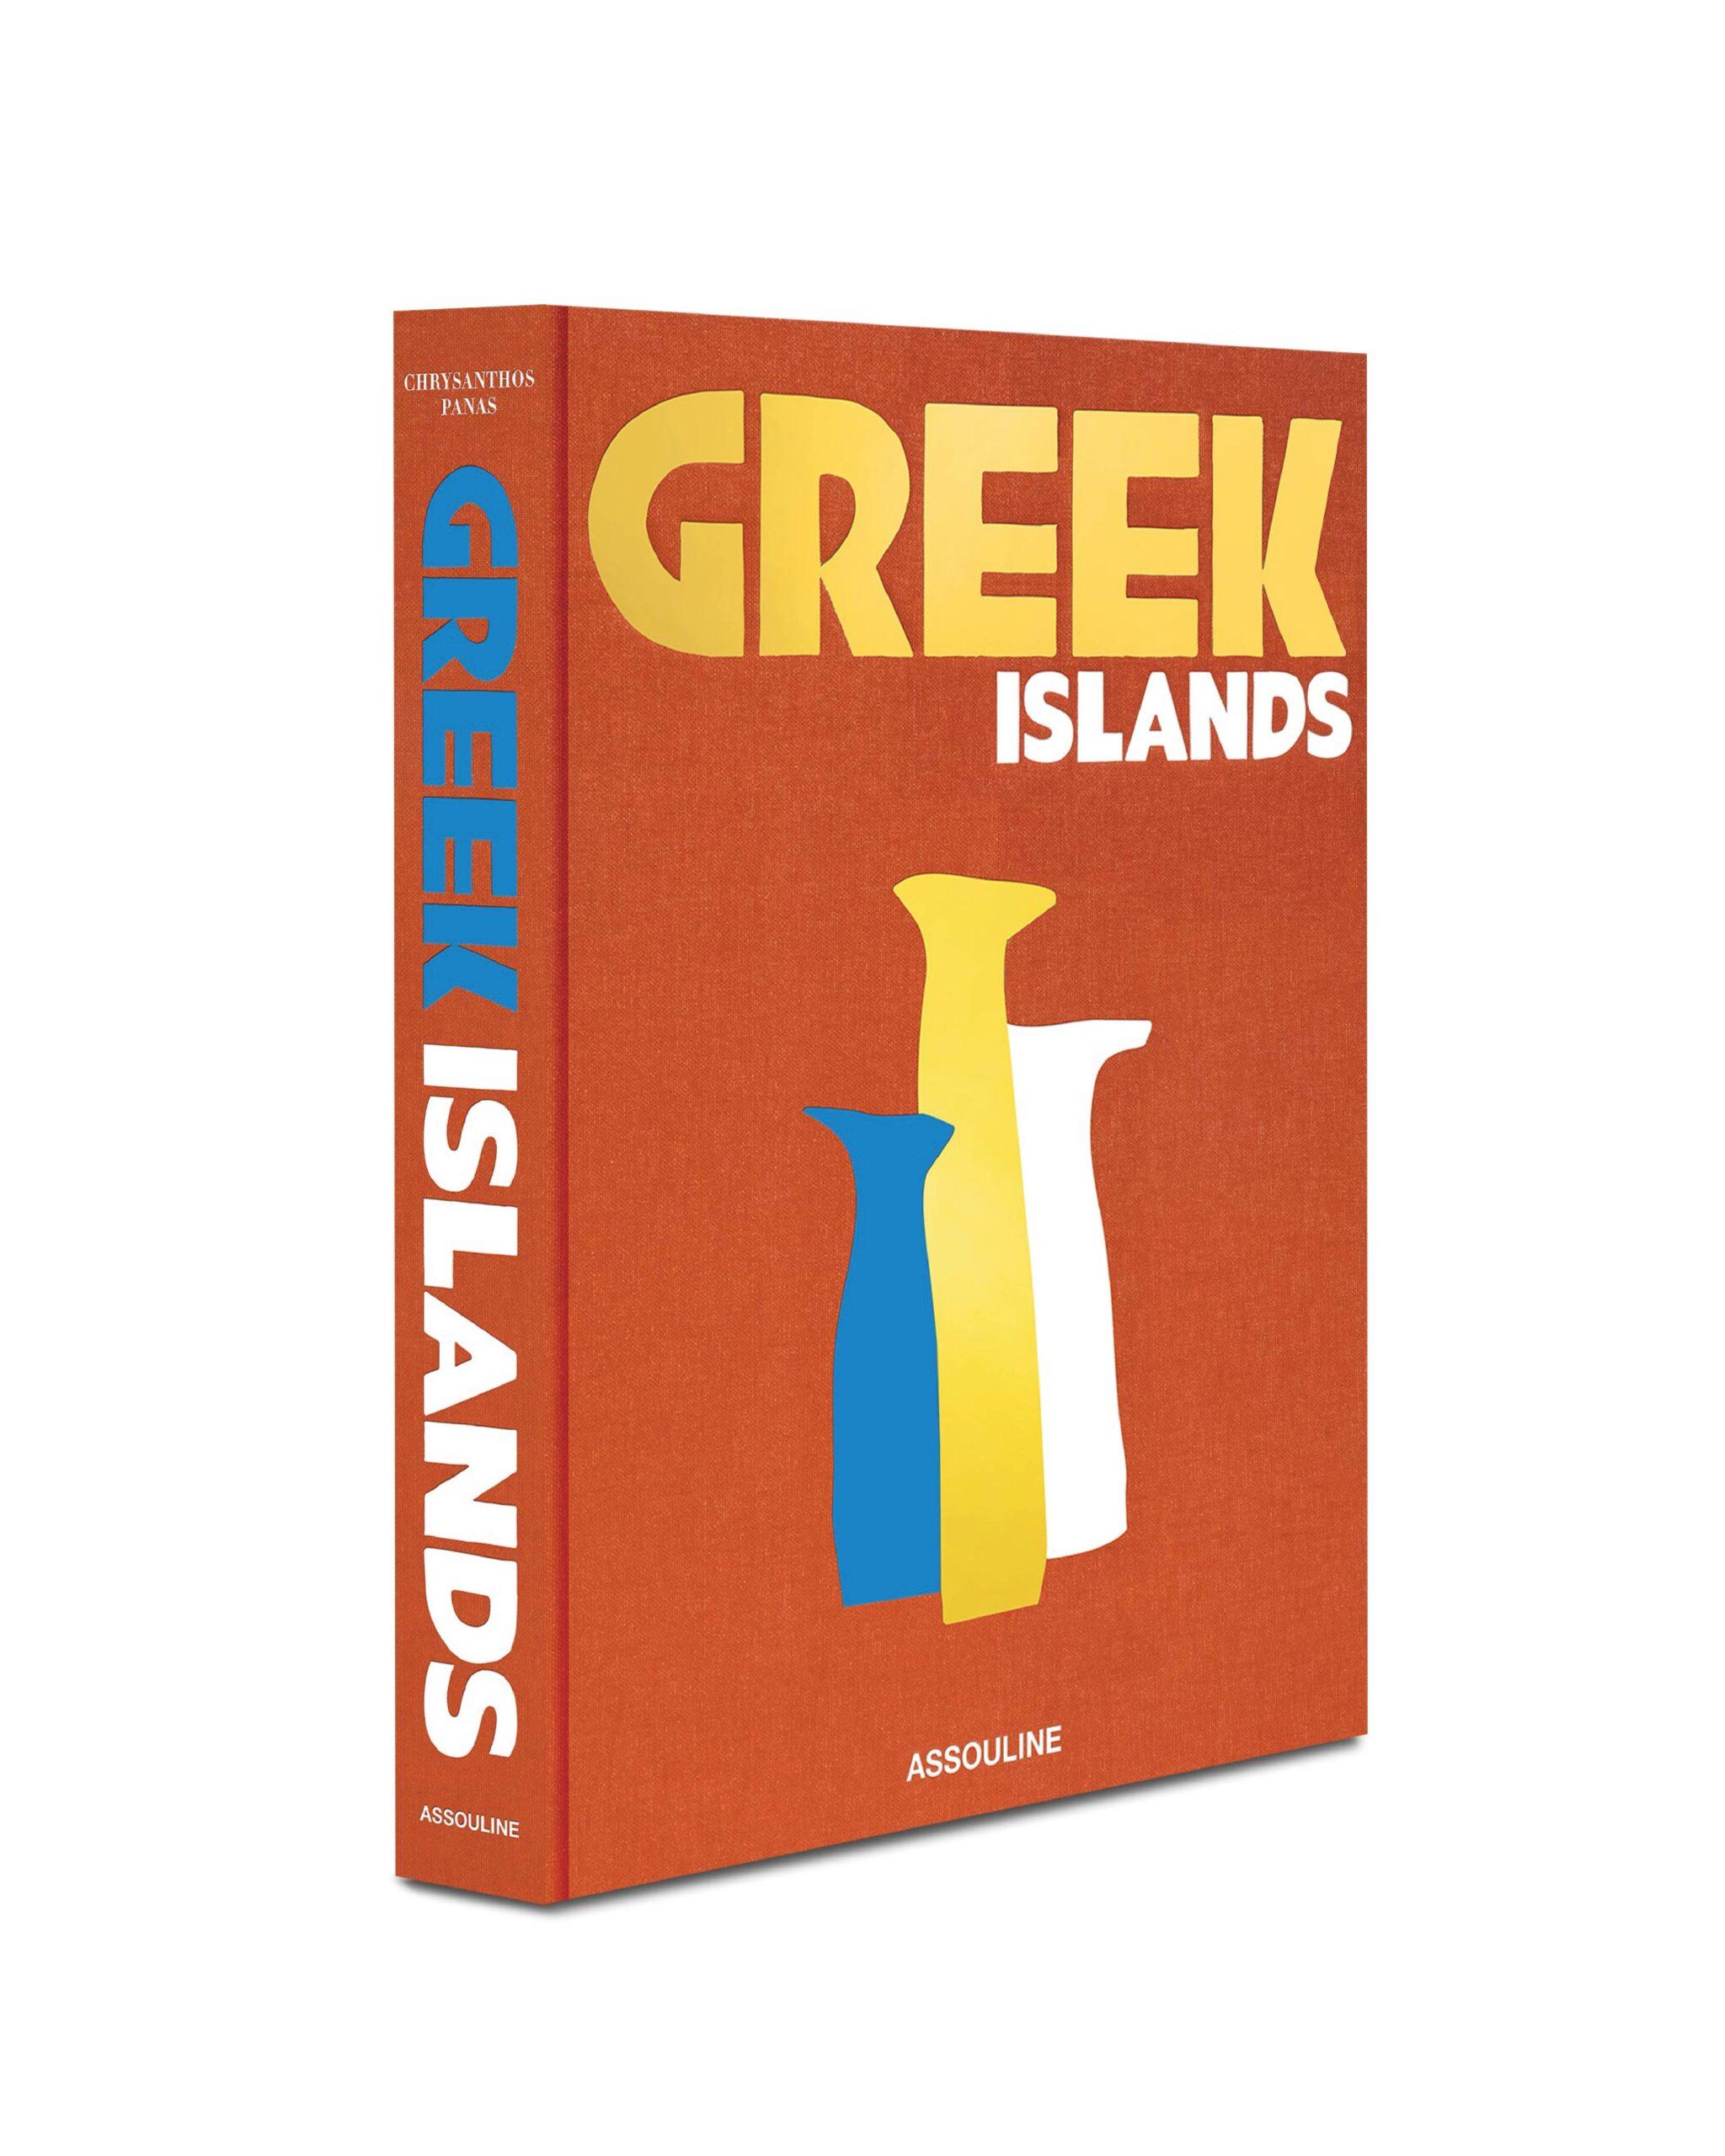 Greek Islands - 19WA47539_2-scaled